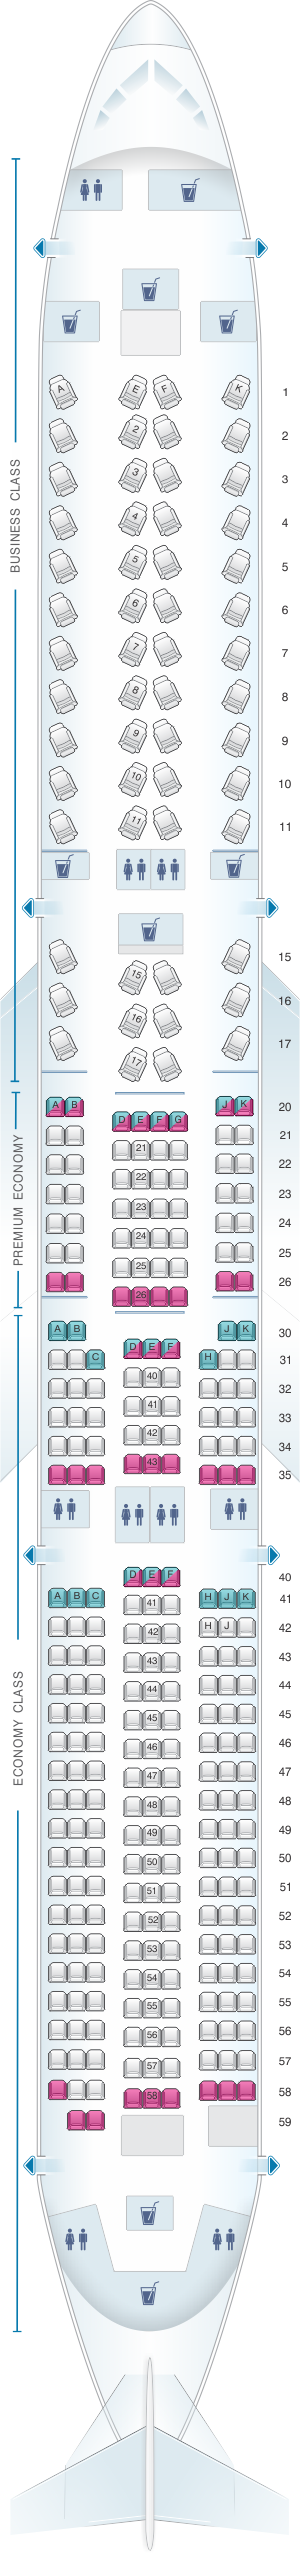 Seat Map British Airways Airbus A350 1000 | SeatMaestro